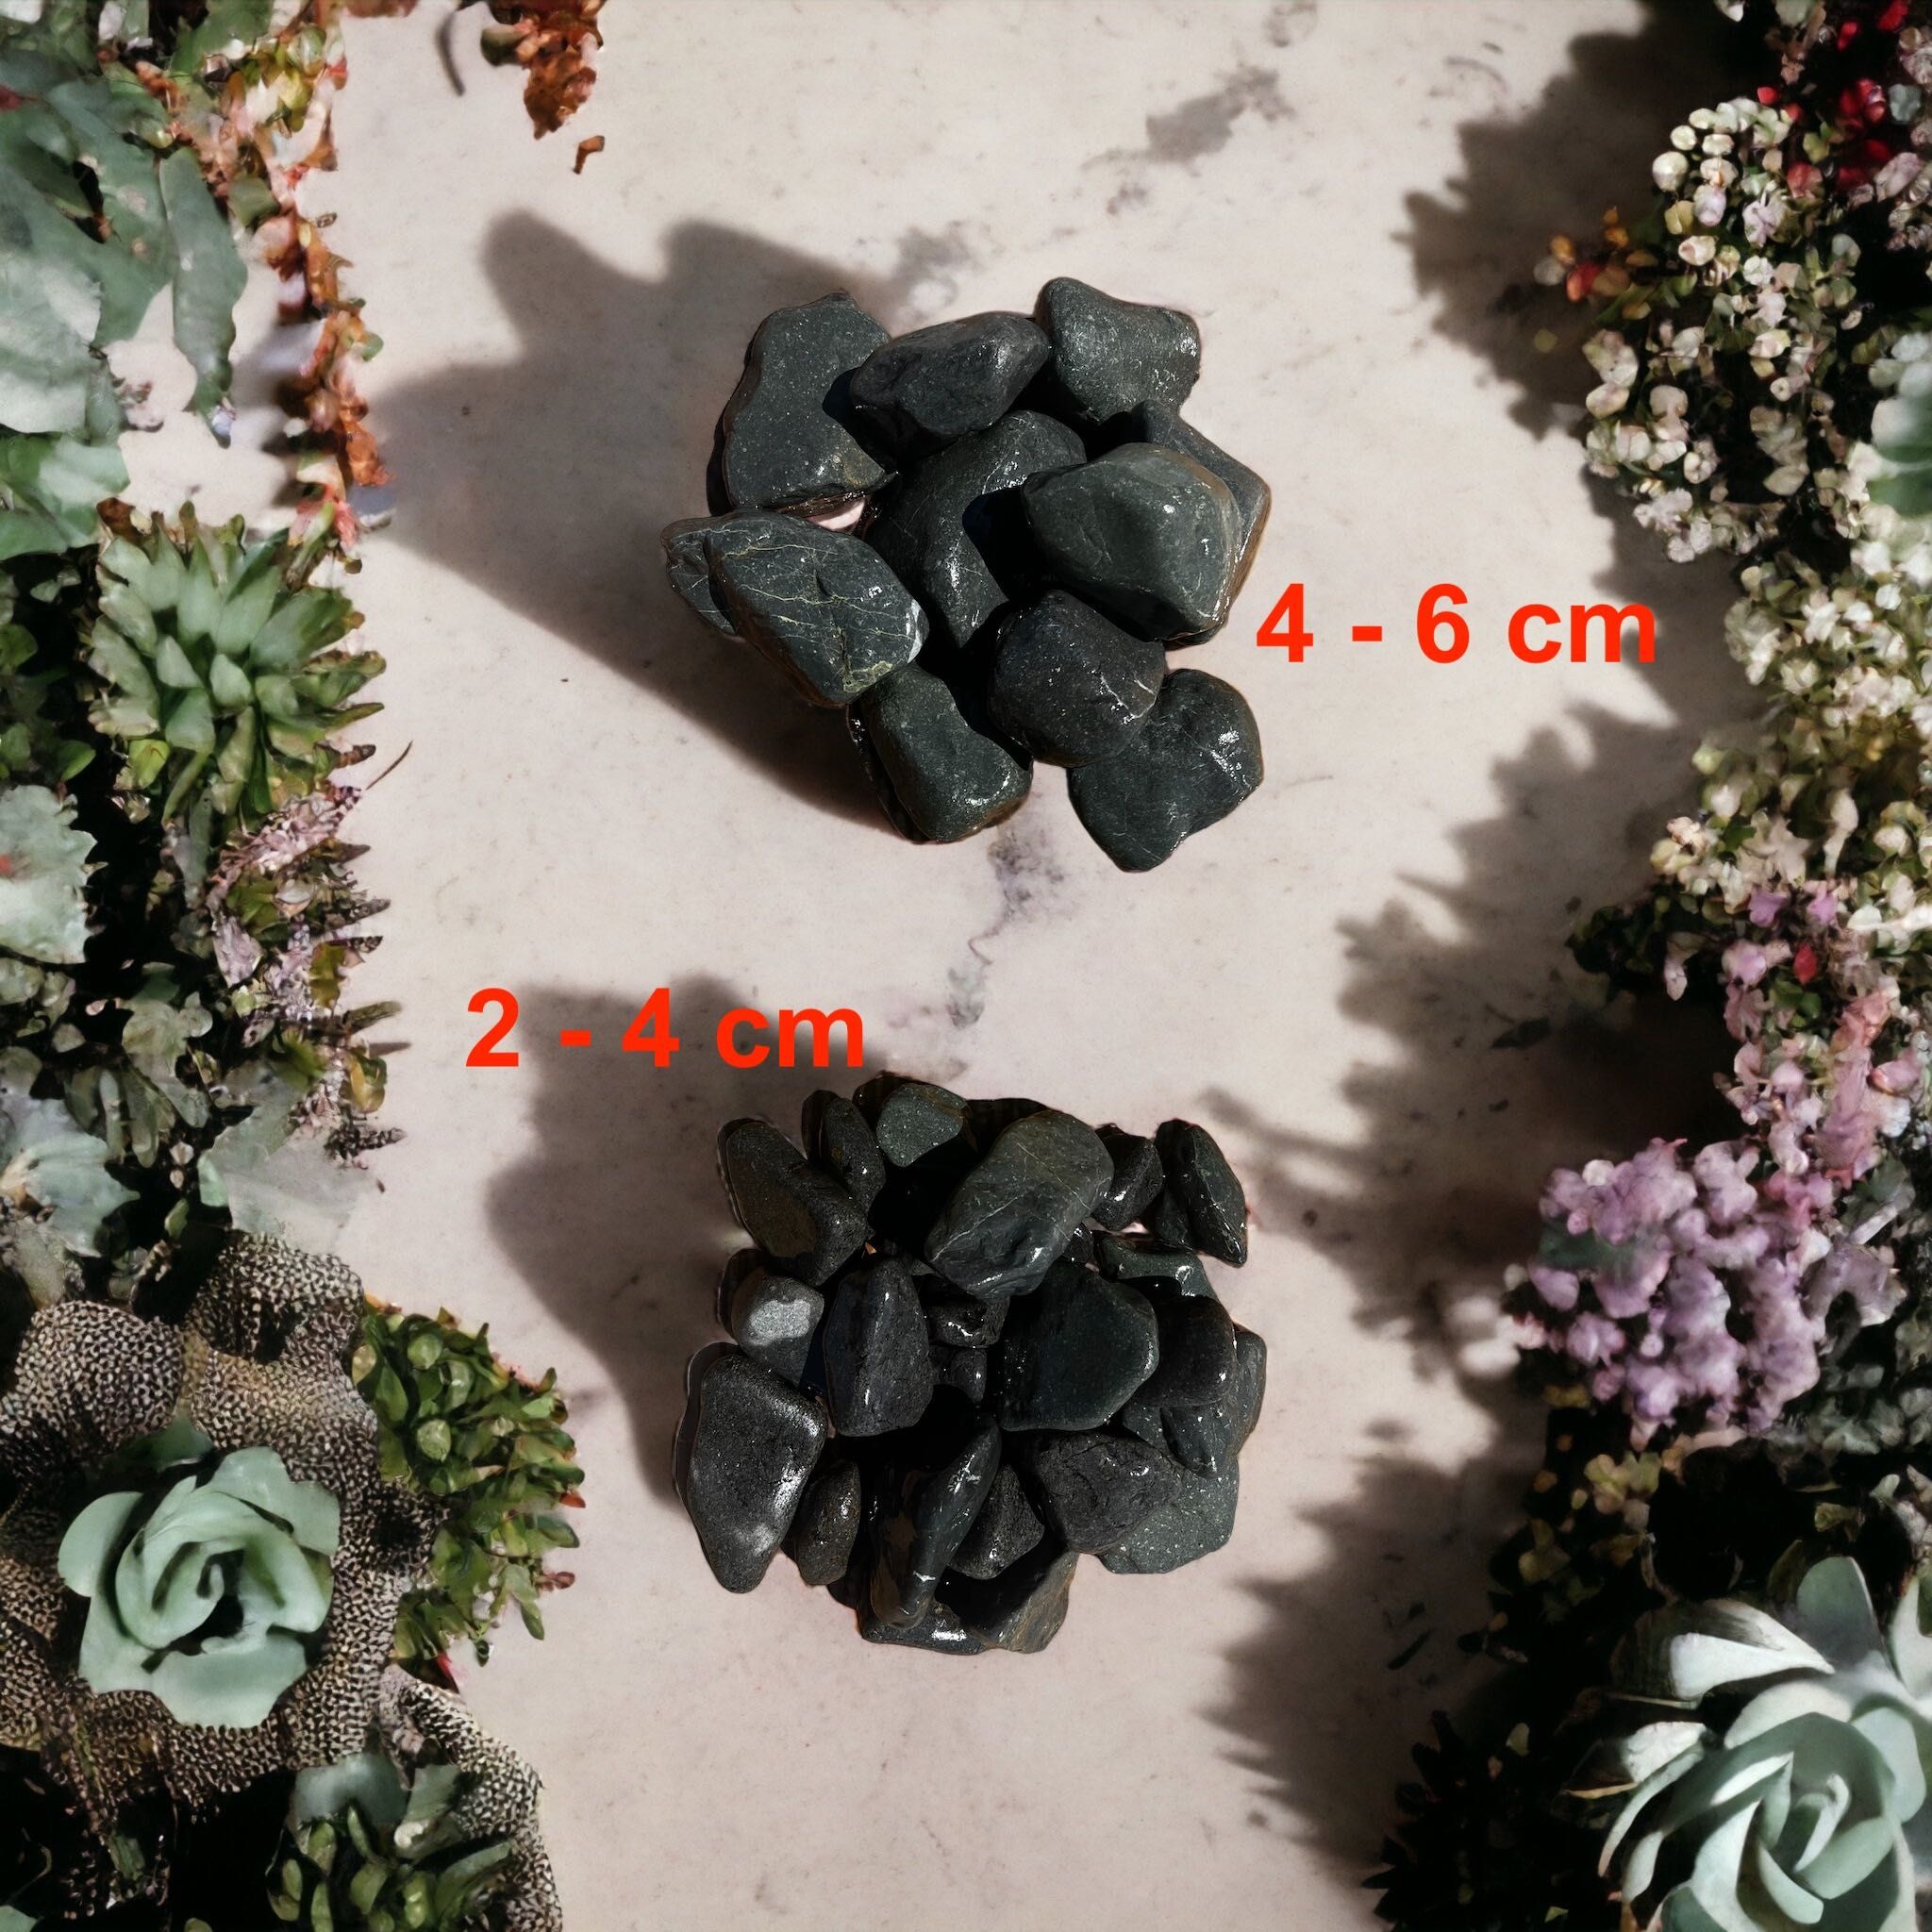 Kamień ozdobny ogrodowy Otoczak Black - 2-4 cm , 4-6 cm PROMOCJA 25kg